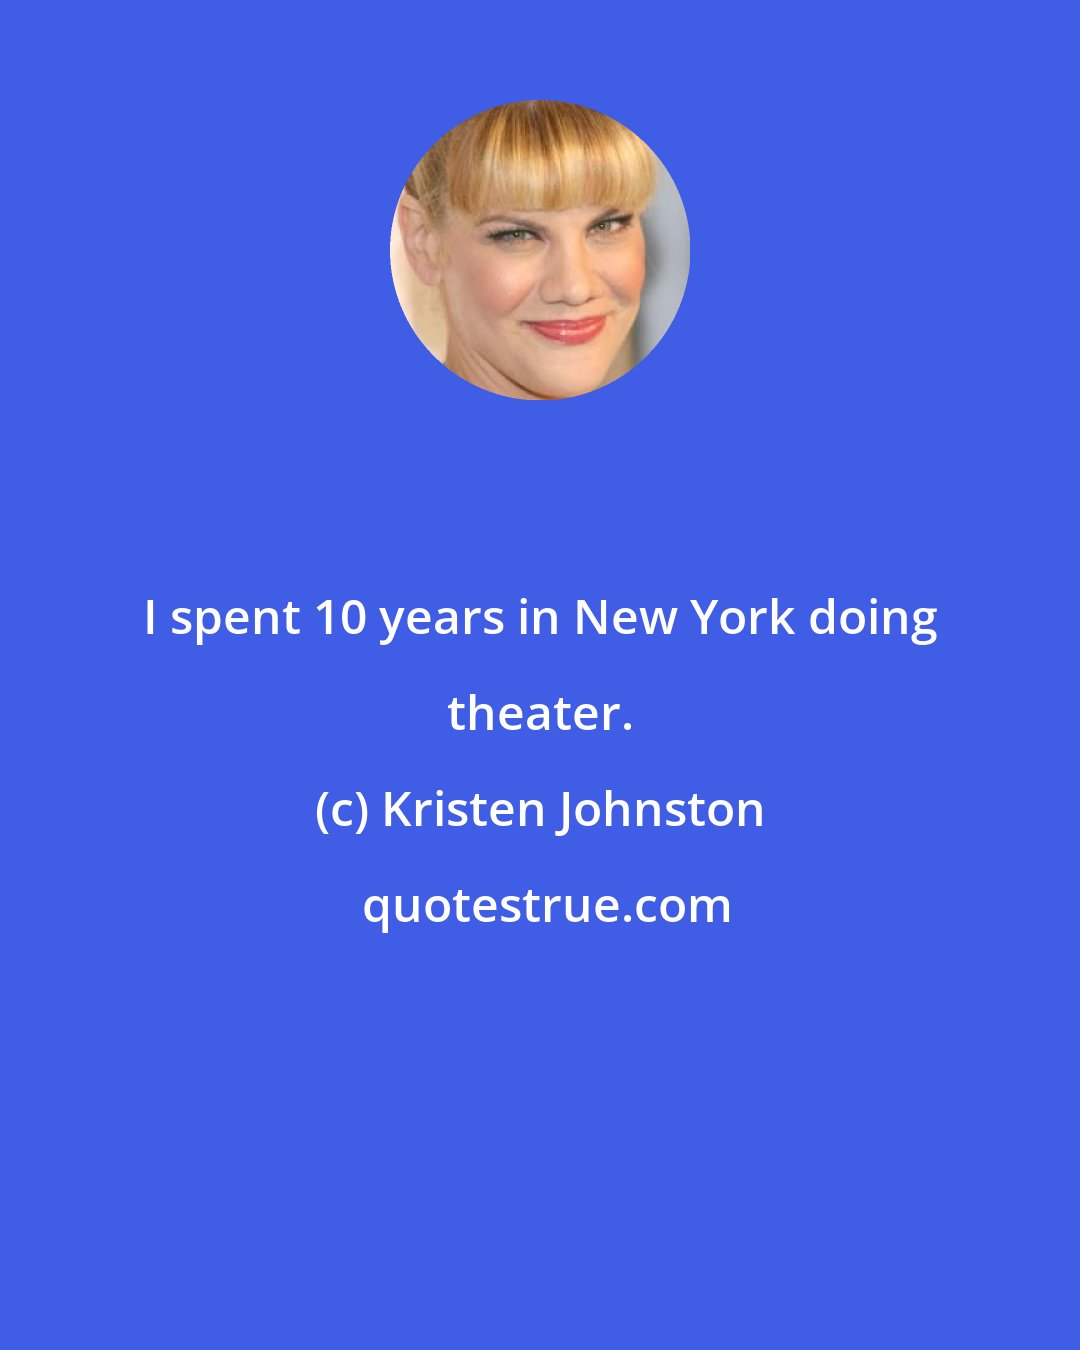 Kristen Johnston: I spent 10 years in New York doing theater.